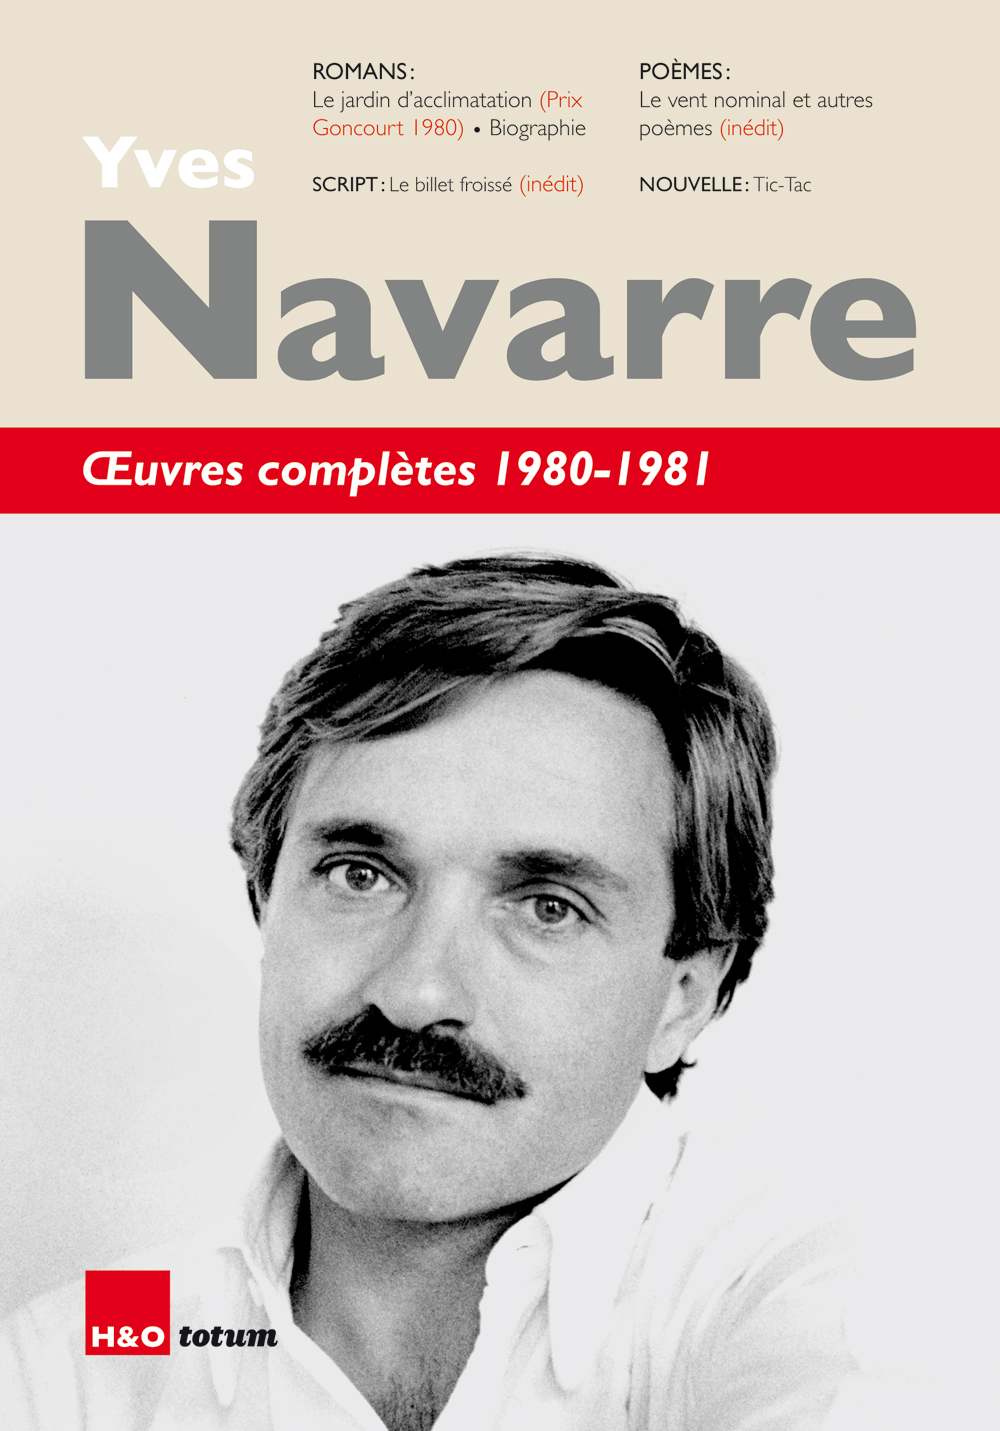 Œuvres complètes d’Yves Navarre : réédition du Goncourt 1980.